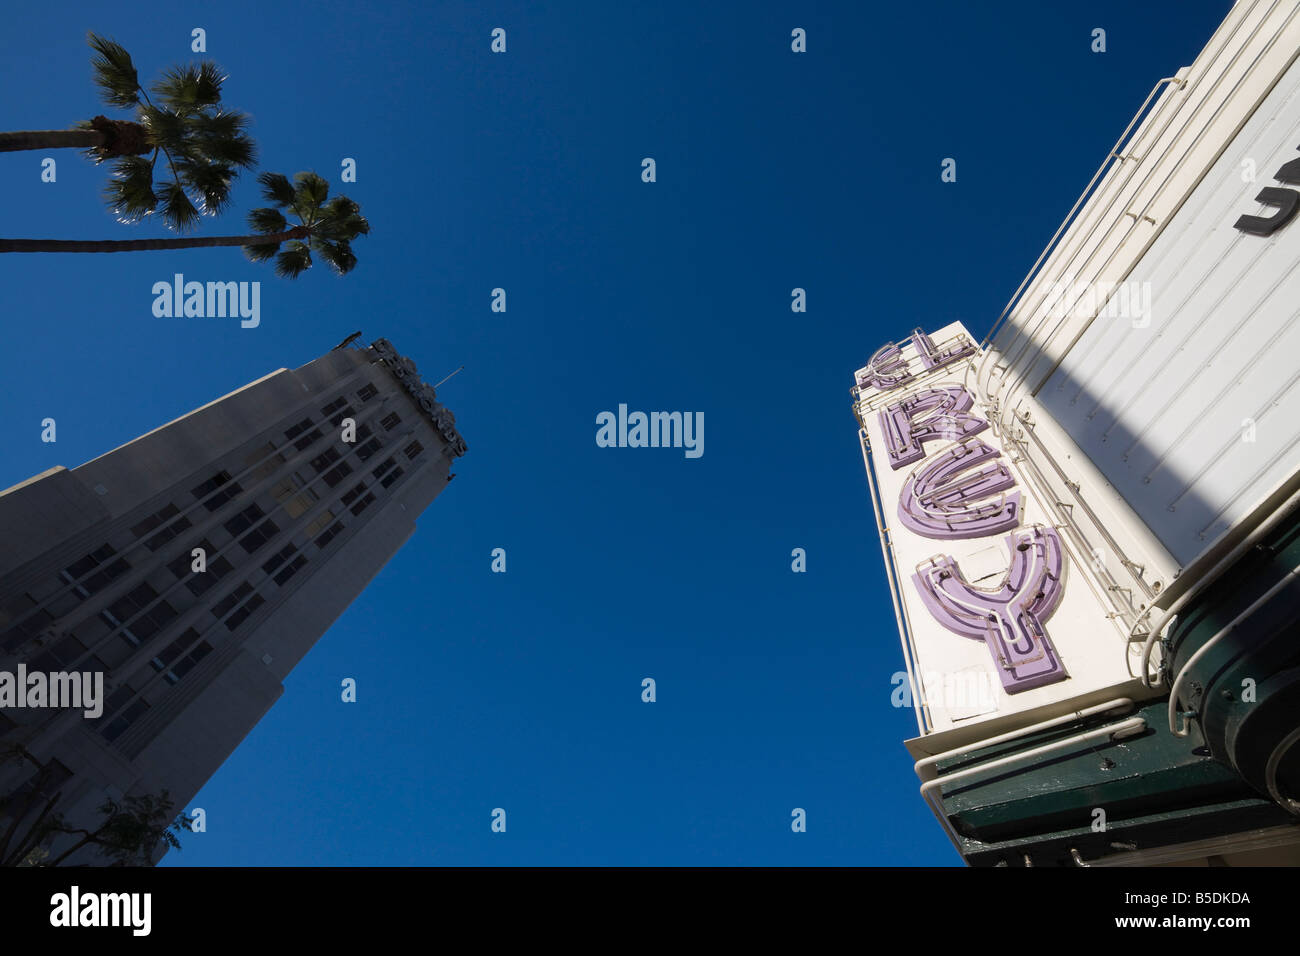 El Rey Cinema, Wilshire Boulevard, Los Angeles, California, USA, North America Stock Photo